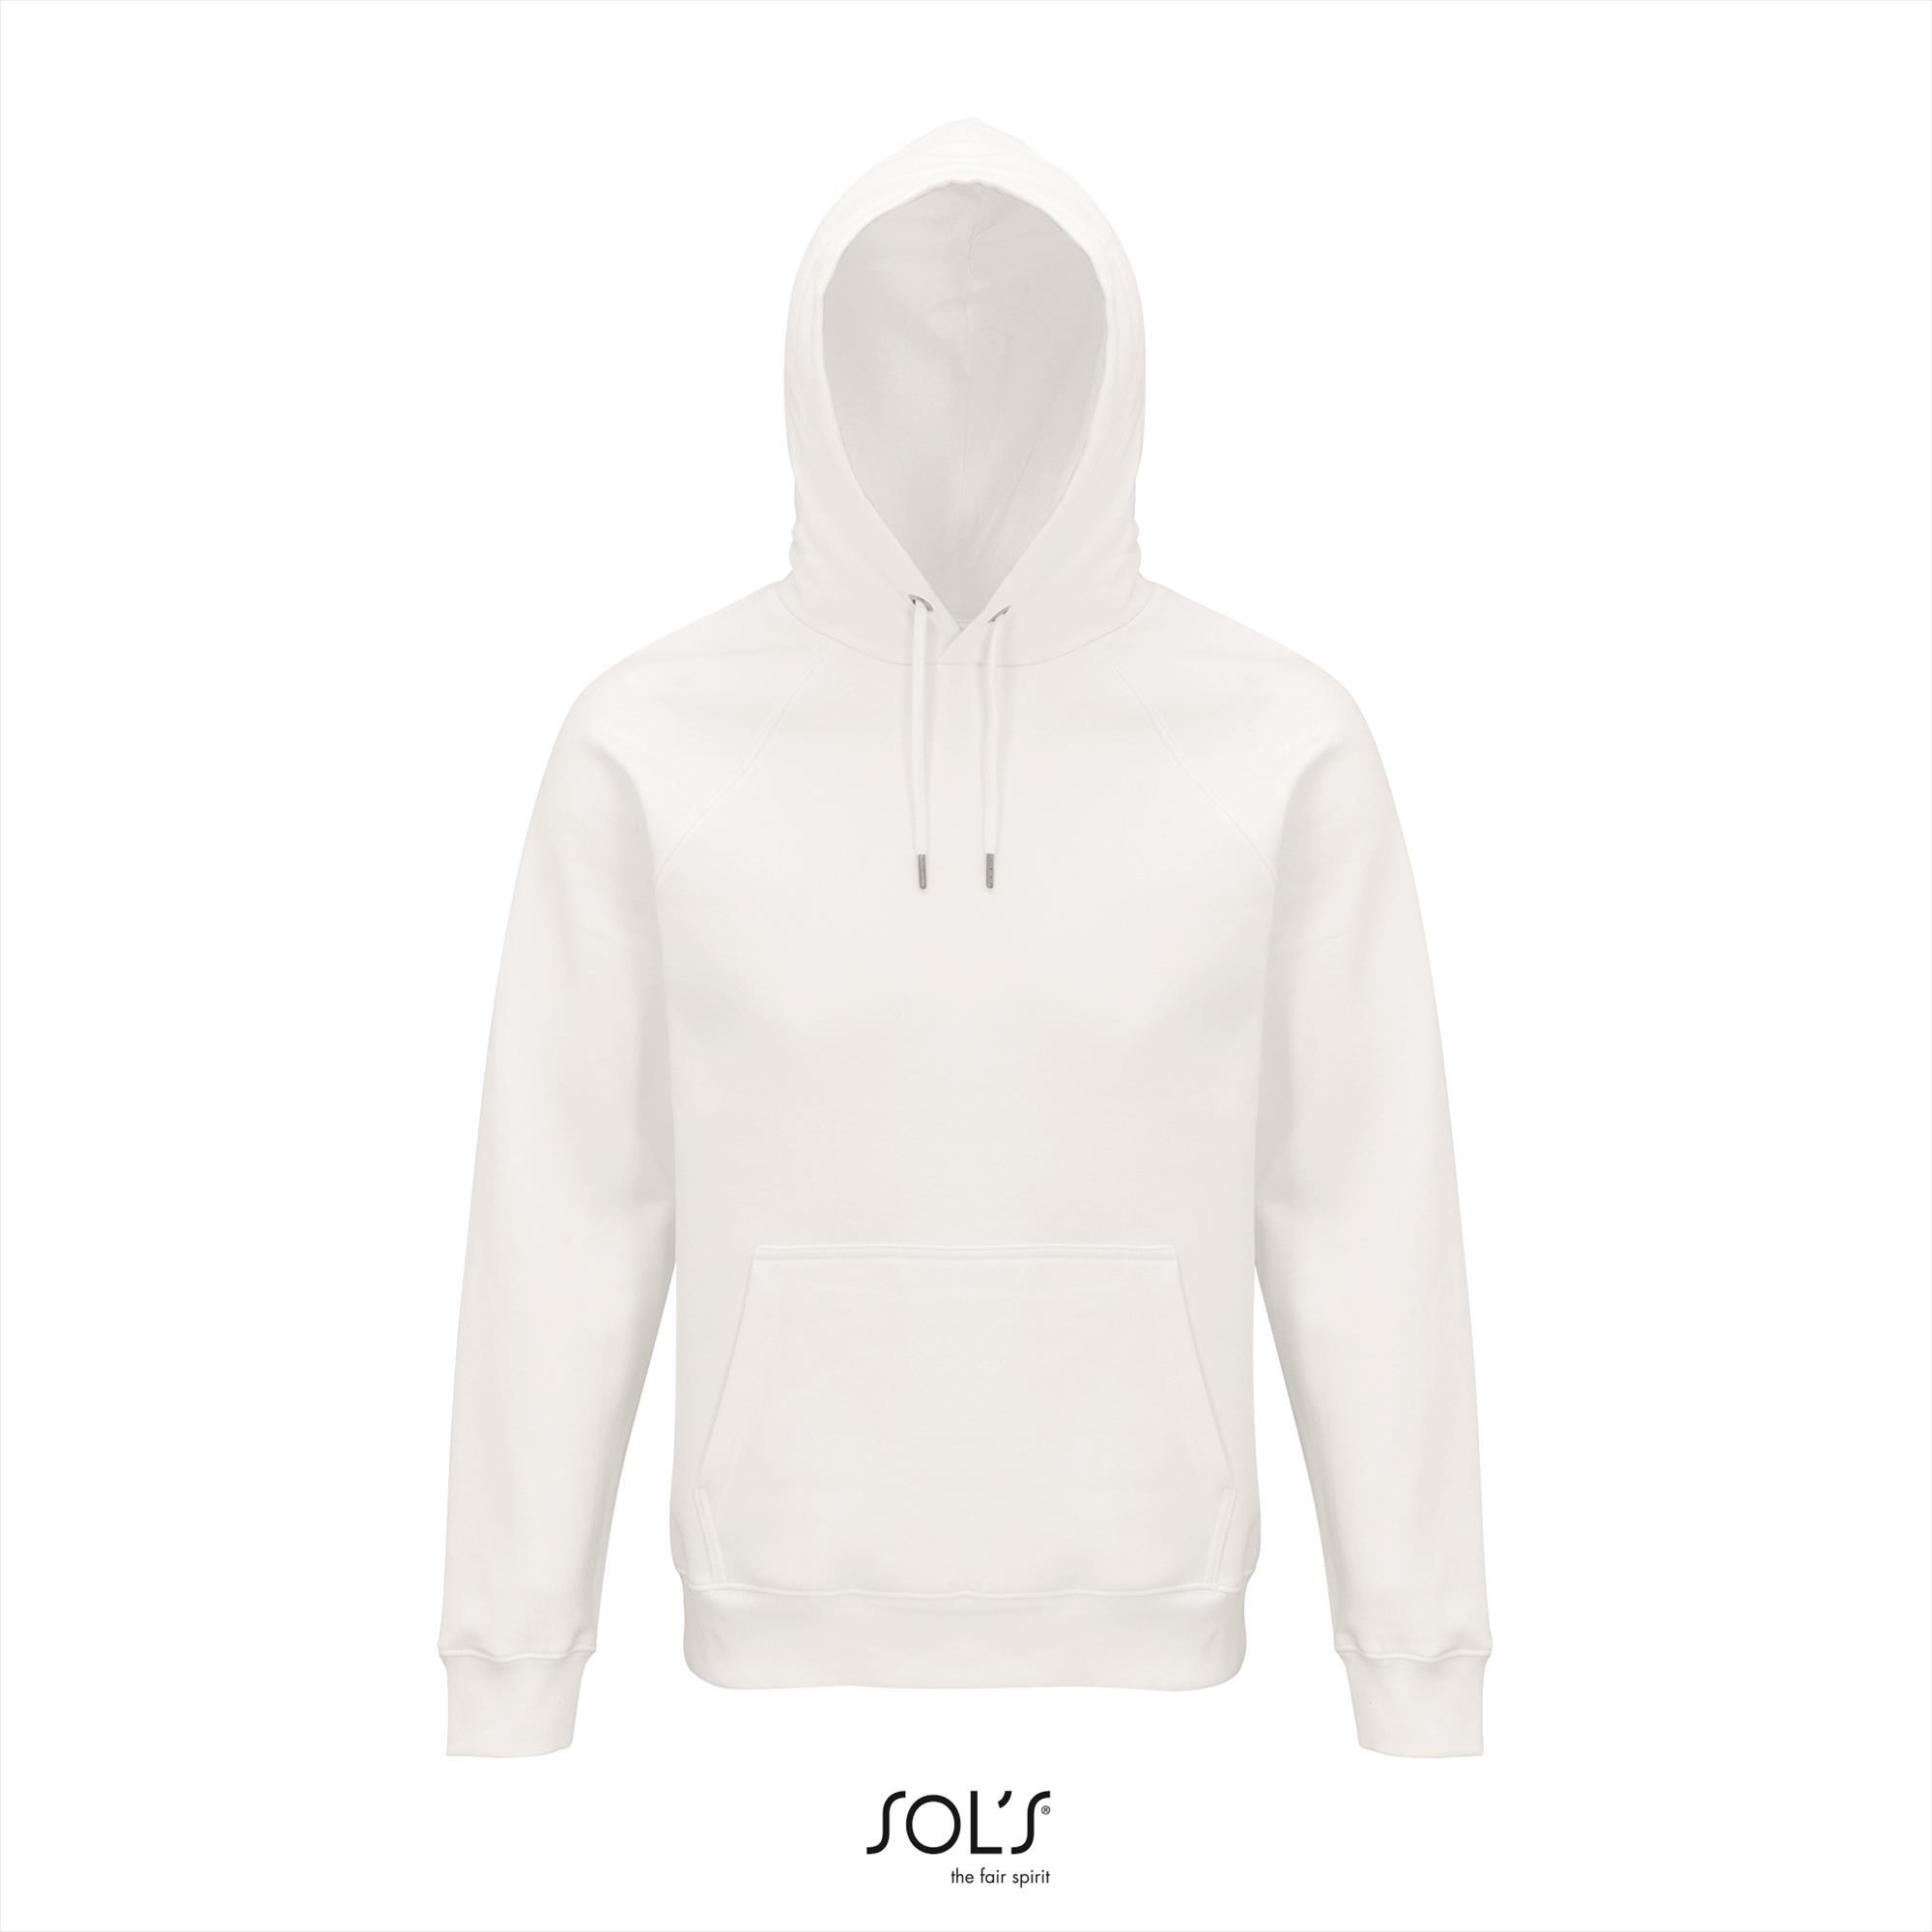 Hoge kwaliteit organische hoodie wit unisex